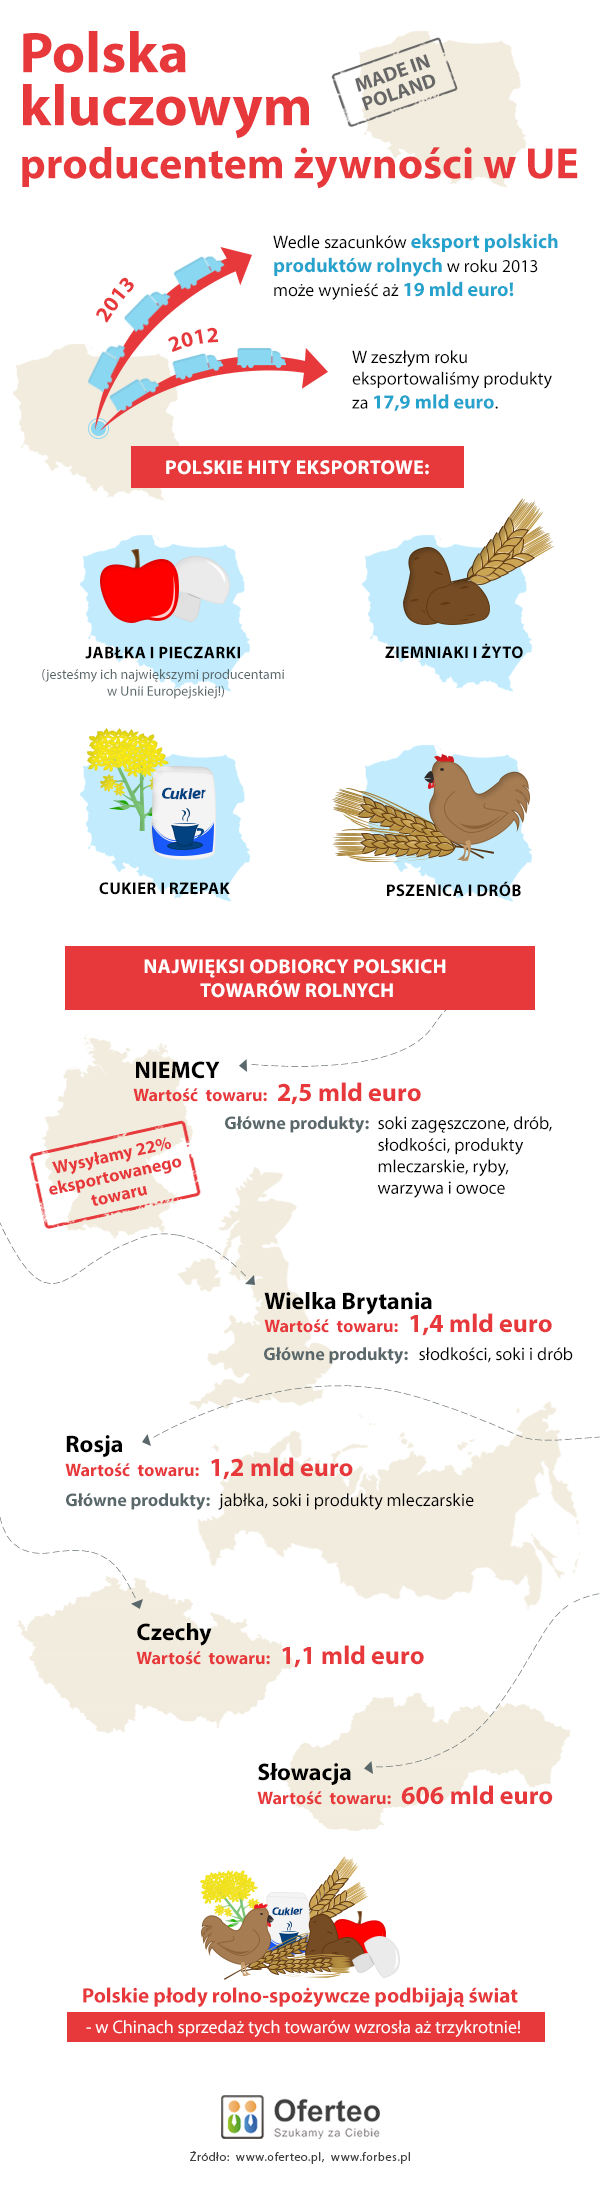 Polska kluczowym producentem żywności w UE